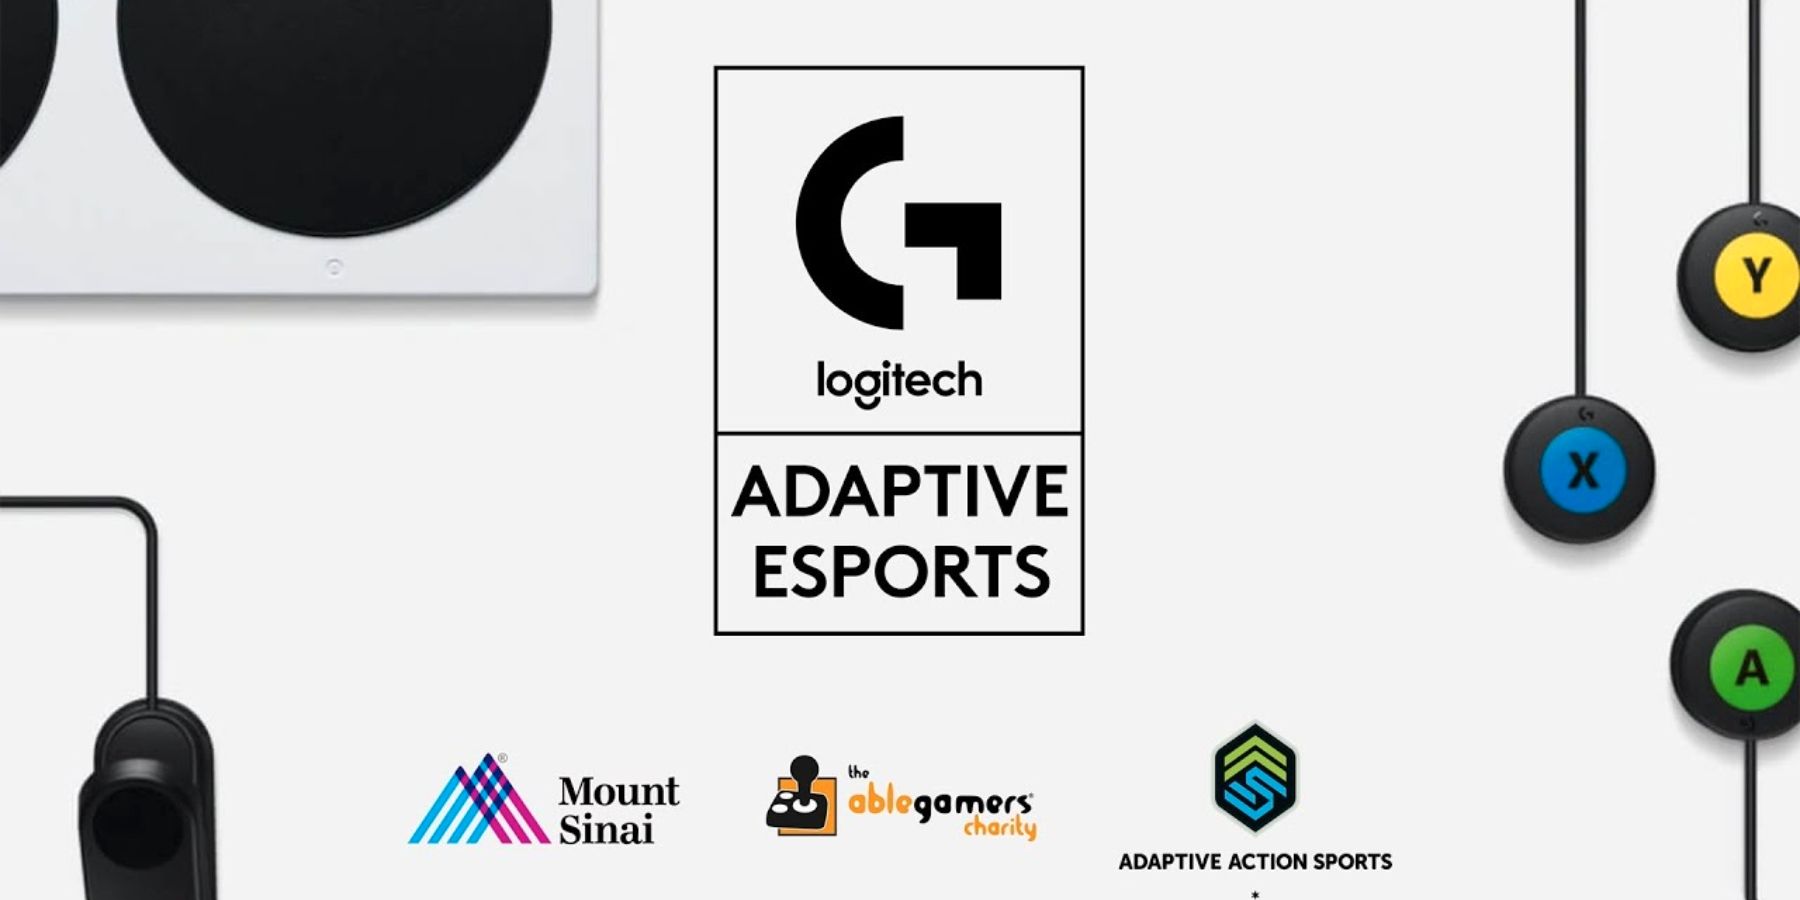 Η Logitech G φιλοξενεί διαγωνισμό προσαρμοστικών Esports για παίκτες με ειδικές ανάγκες